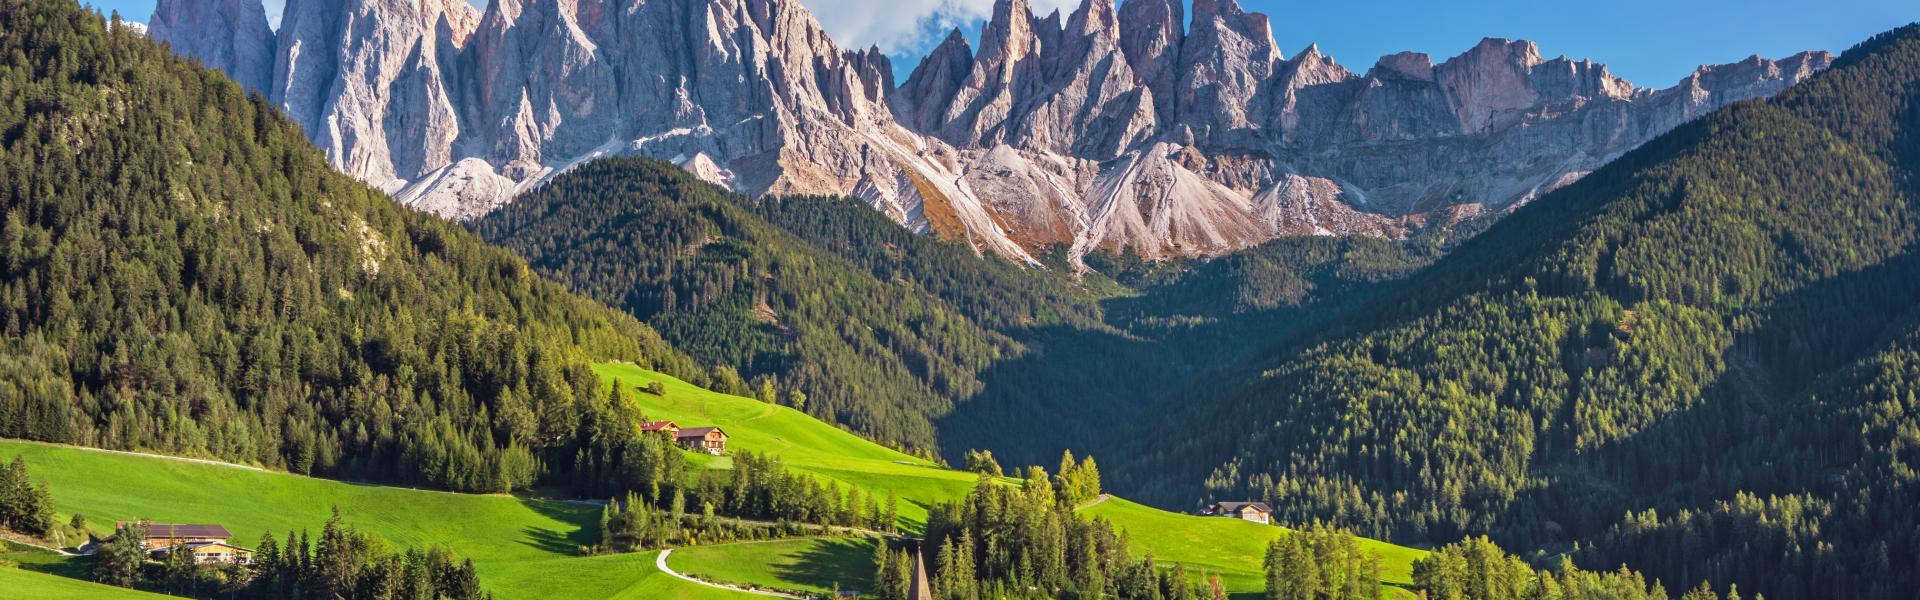 Ferienwohnungen & Ferienhäuser für Urlaub in Trentino - Casamundo